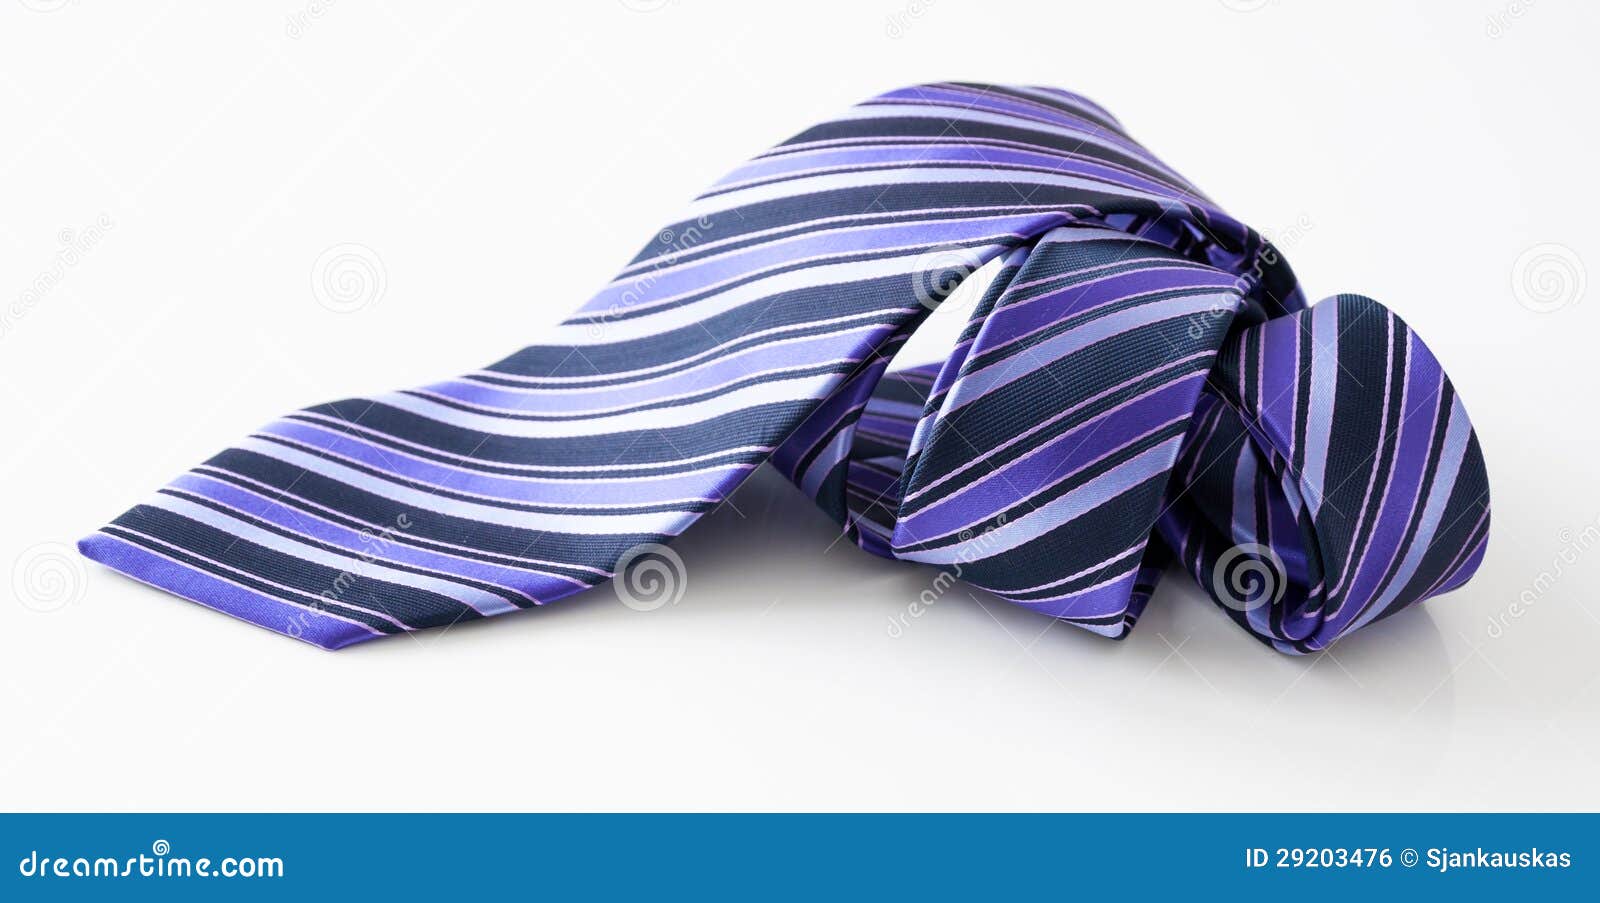 rolled necktie